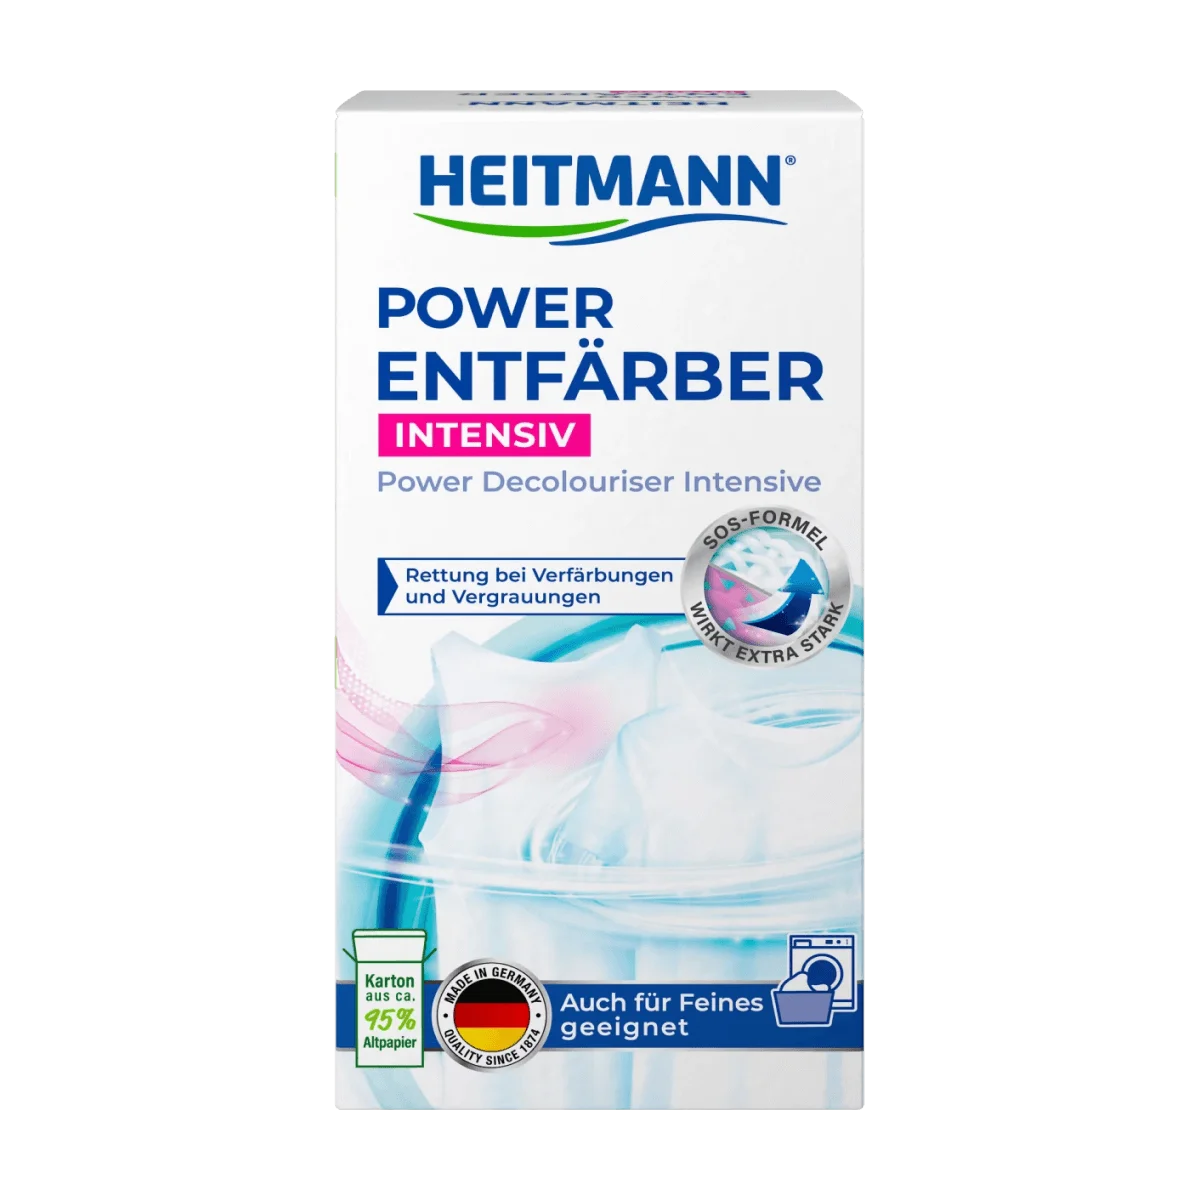 Heitmann Power-Entfärber Intensiv für Verfärbungen & Vergrauungen, 250 g